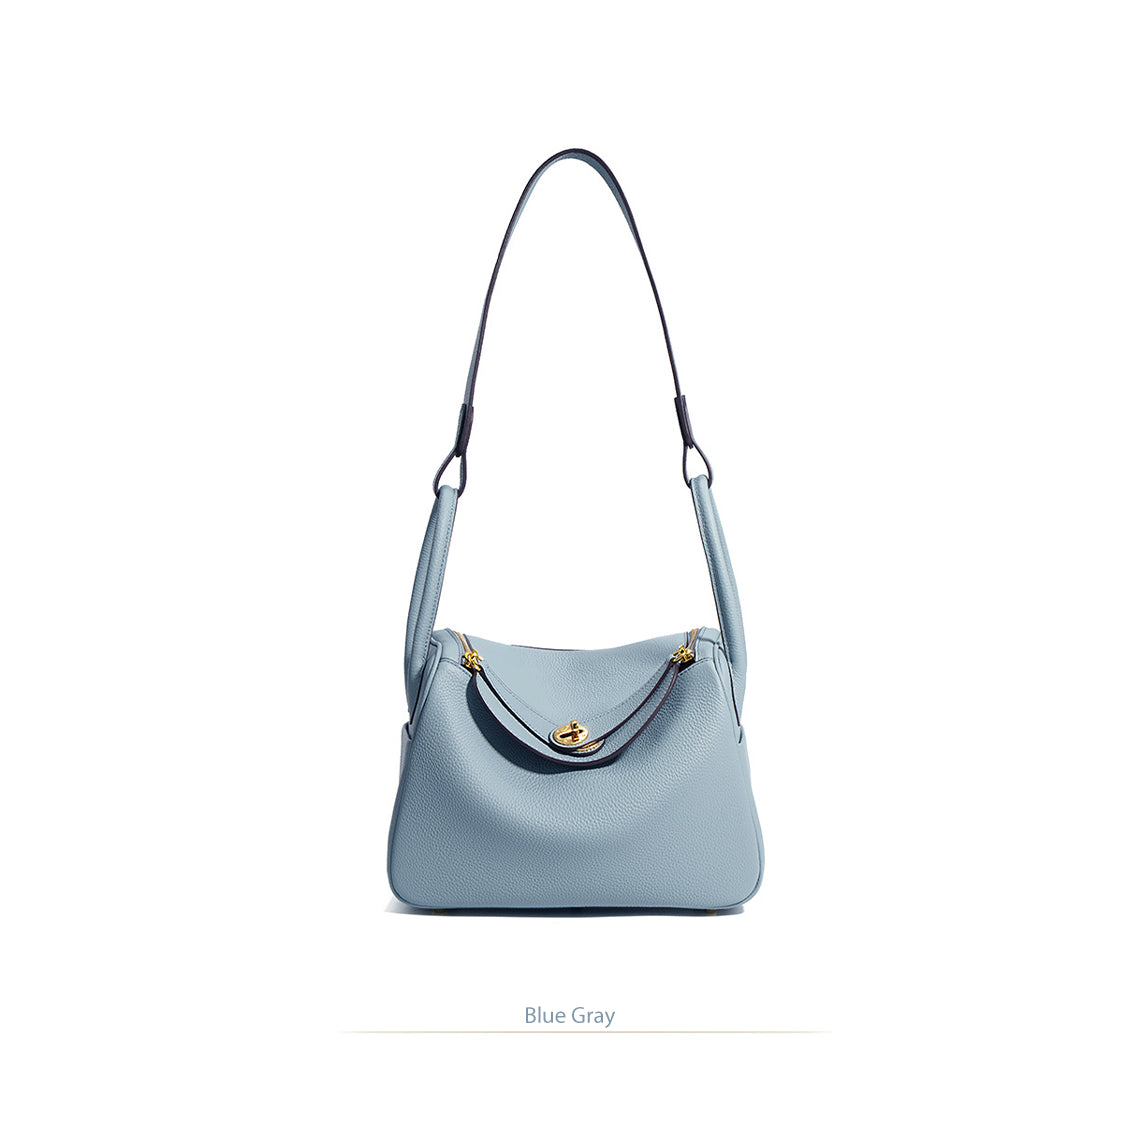 Blue Leather Handbag | Inspired Leather Lindy Handbag in Blue - POPSEWING™